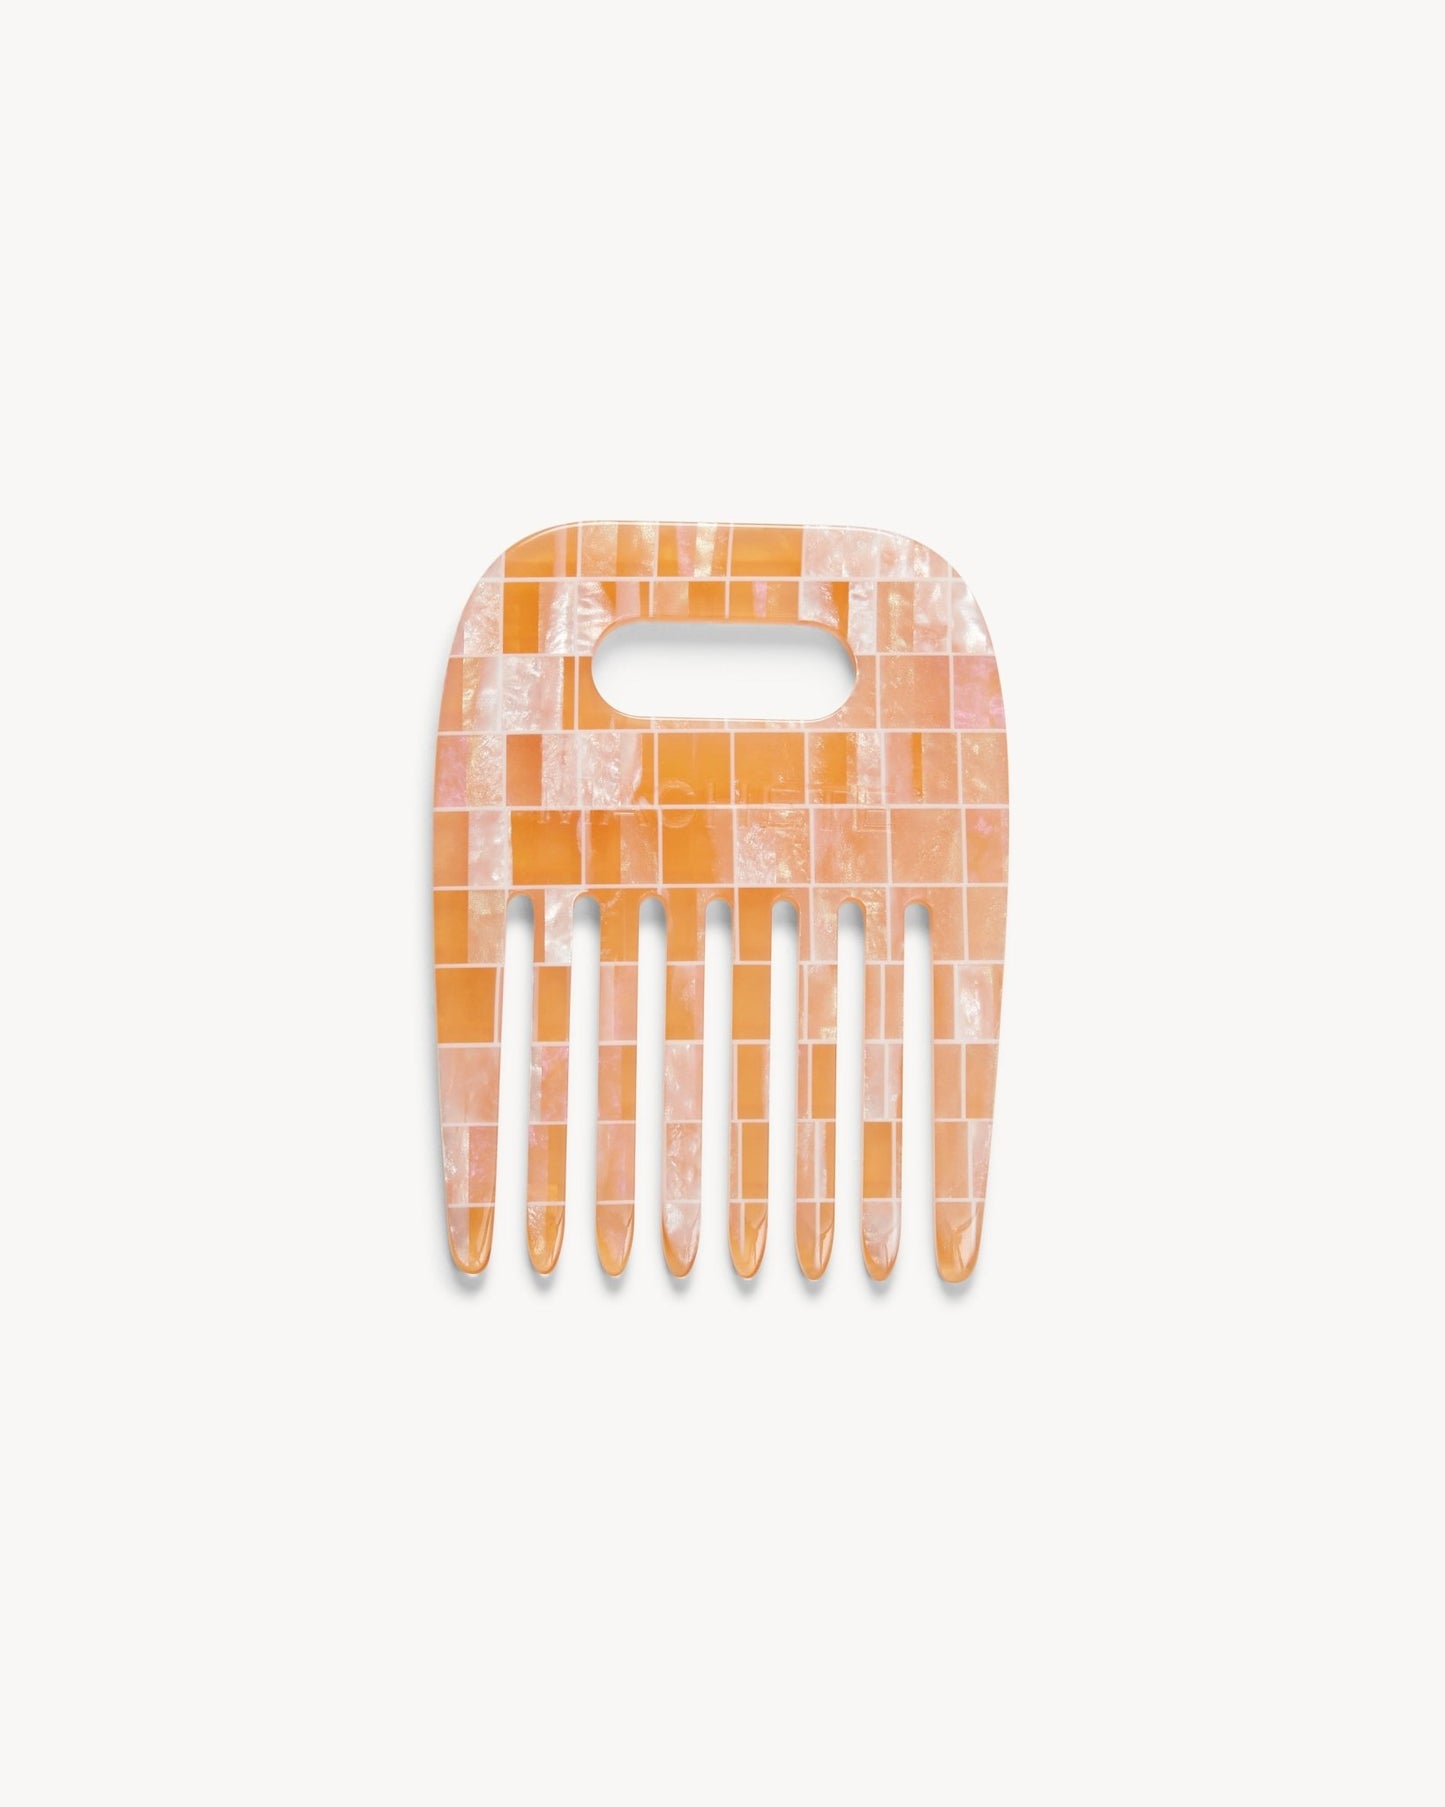 No. 4 Comb in Apricot Shell Checker - MACHETE